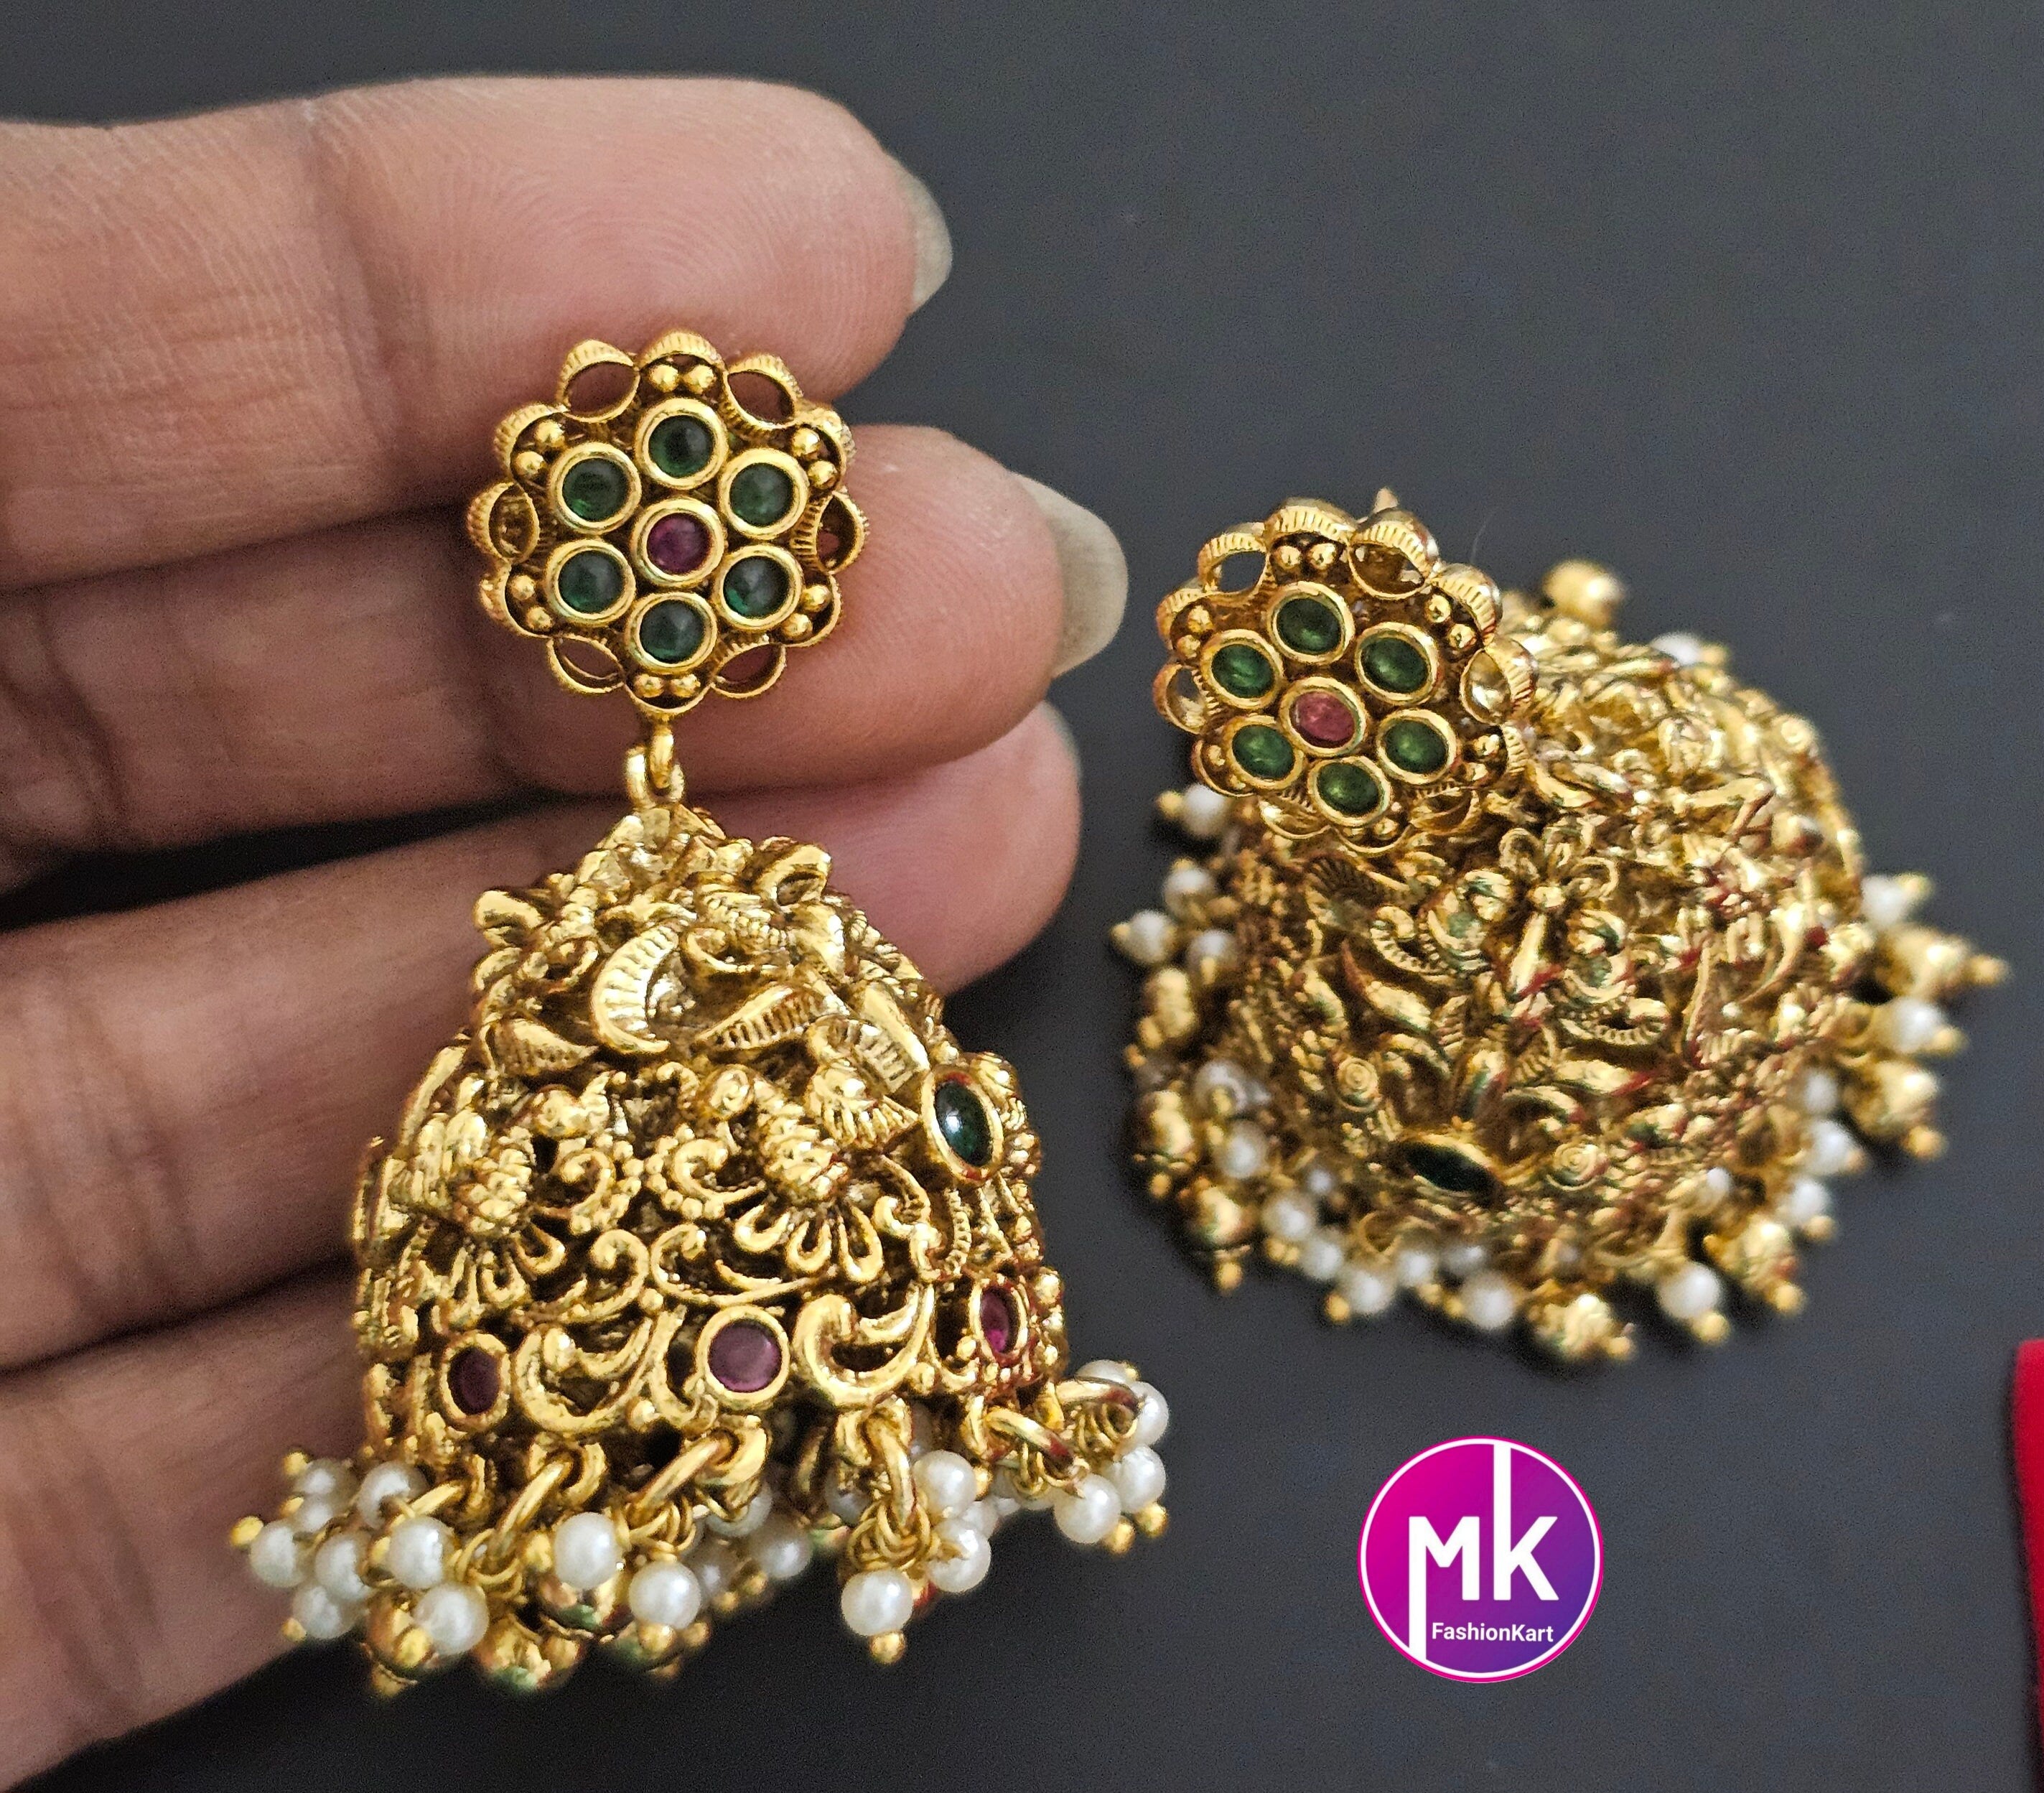 Beautiful Radhakrishna Premium quality Gold Jewelry Replica Haram with big pendent with matching Big Jhumka - Bridal Haram